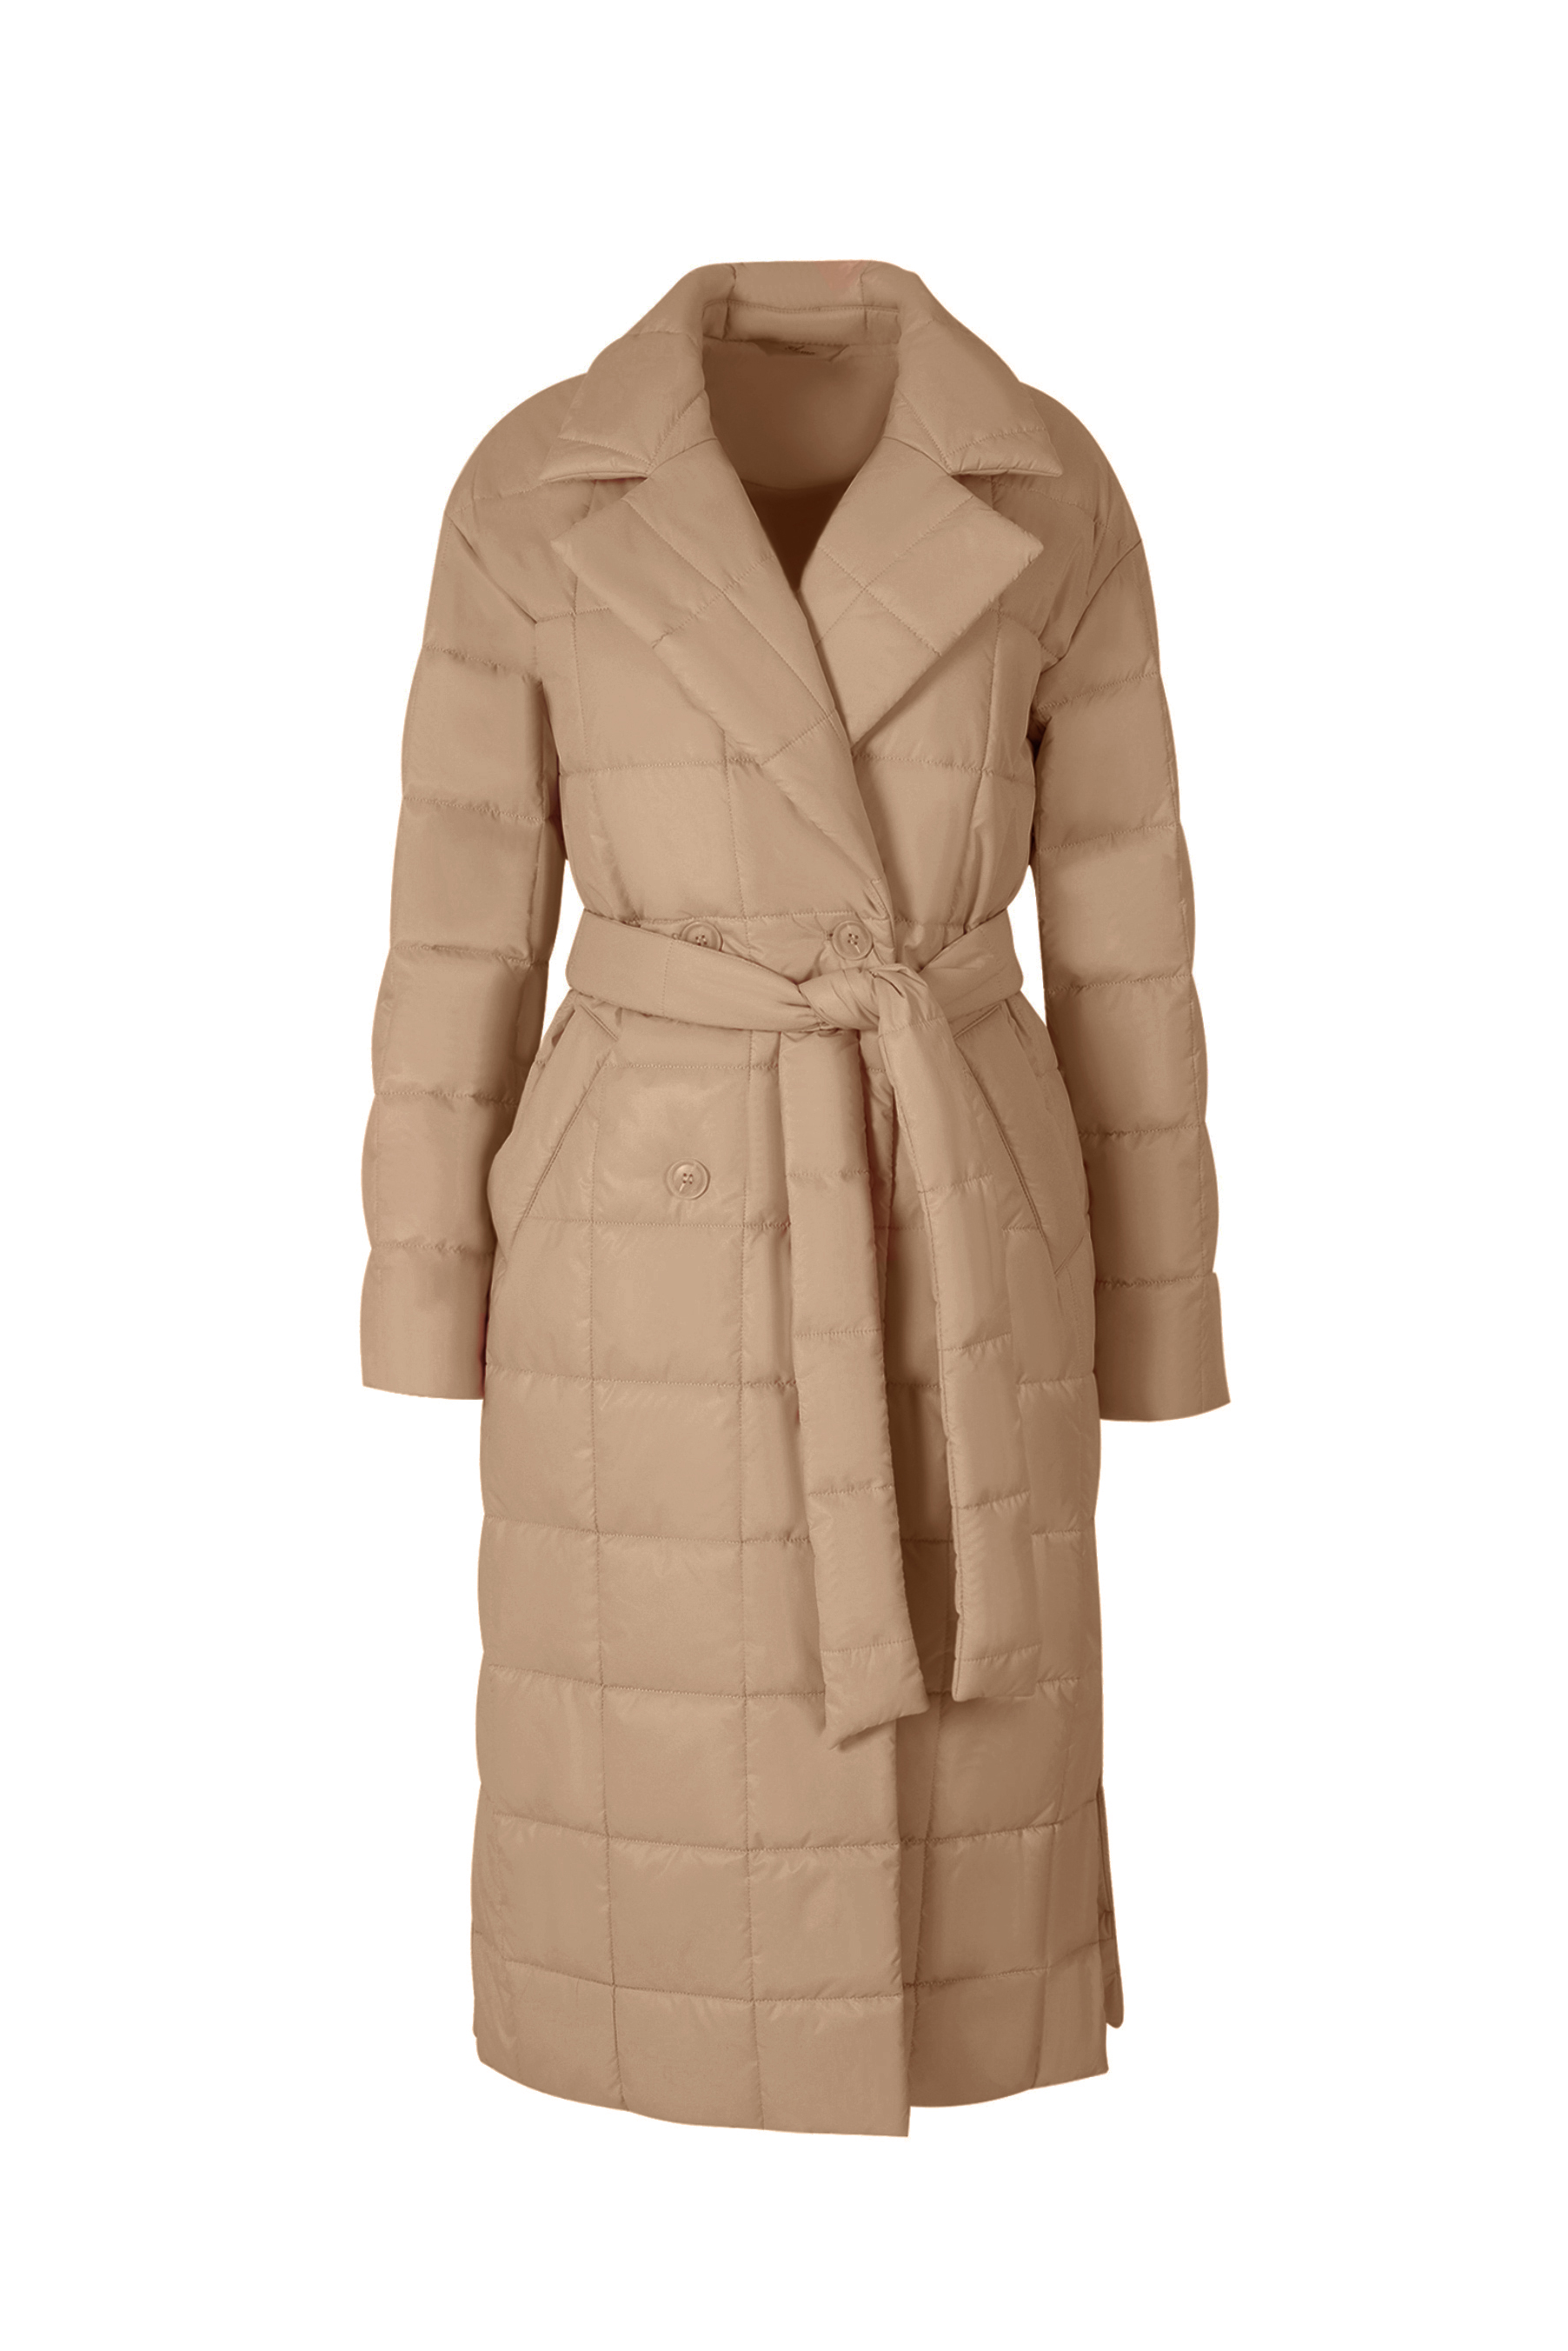 Пальто женское плащевое утепленное 5-12405-1. Фото 1.